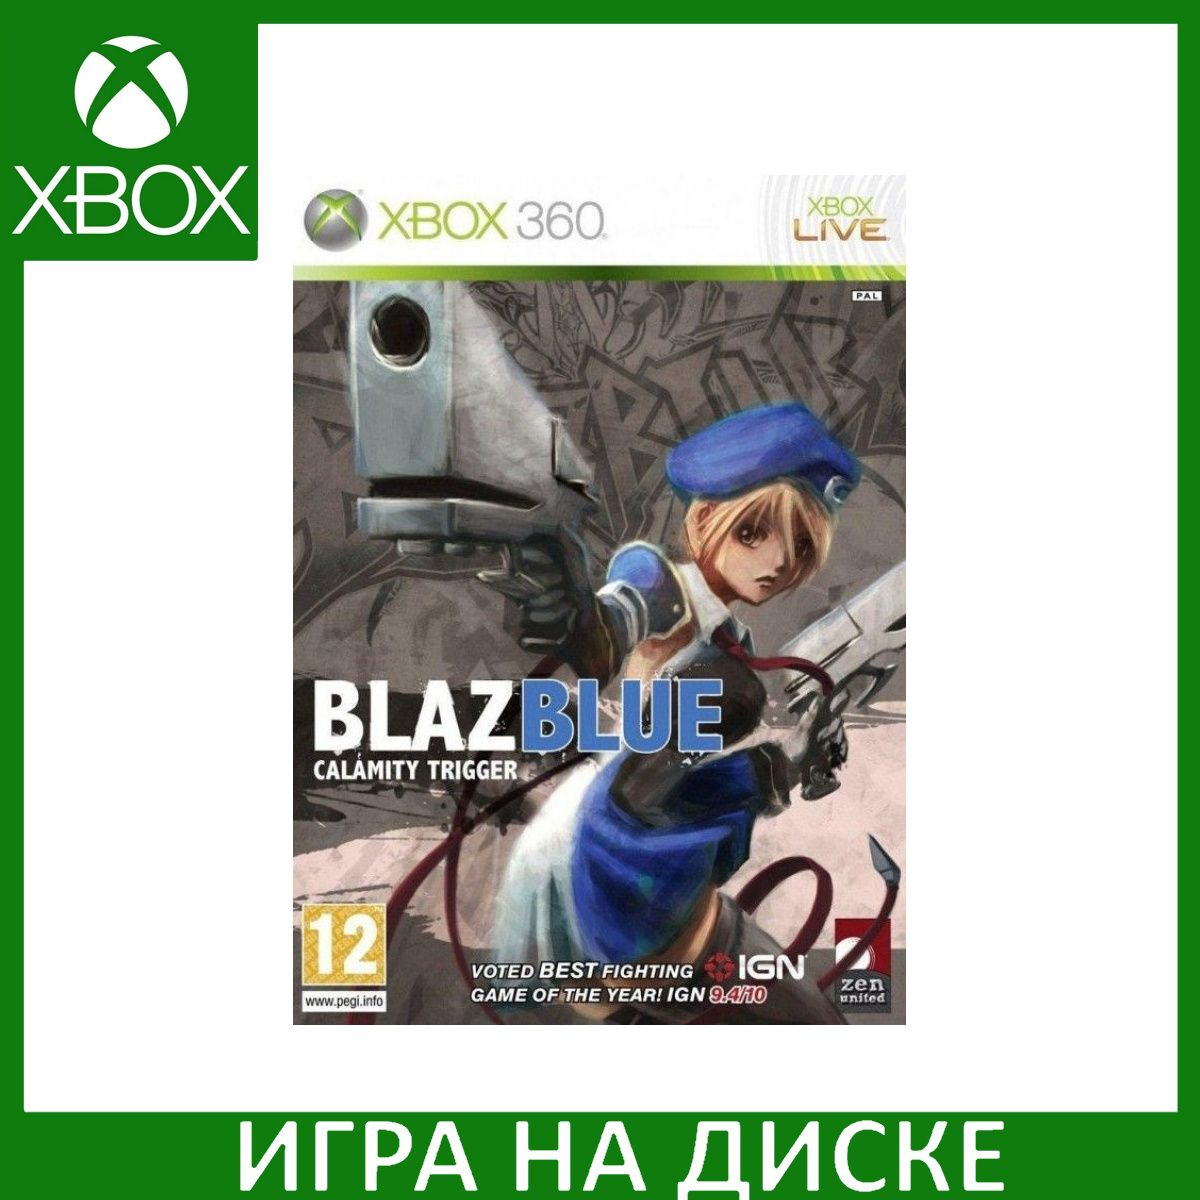 Диск с Игрой BlazBlue: Calamity Trigger (Xbox 360). Новый лицензионный запечатанный диск.